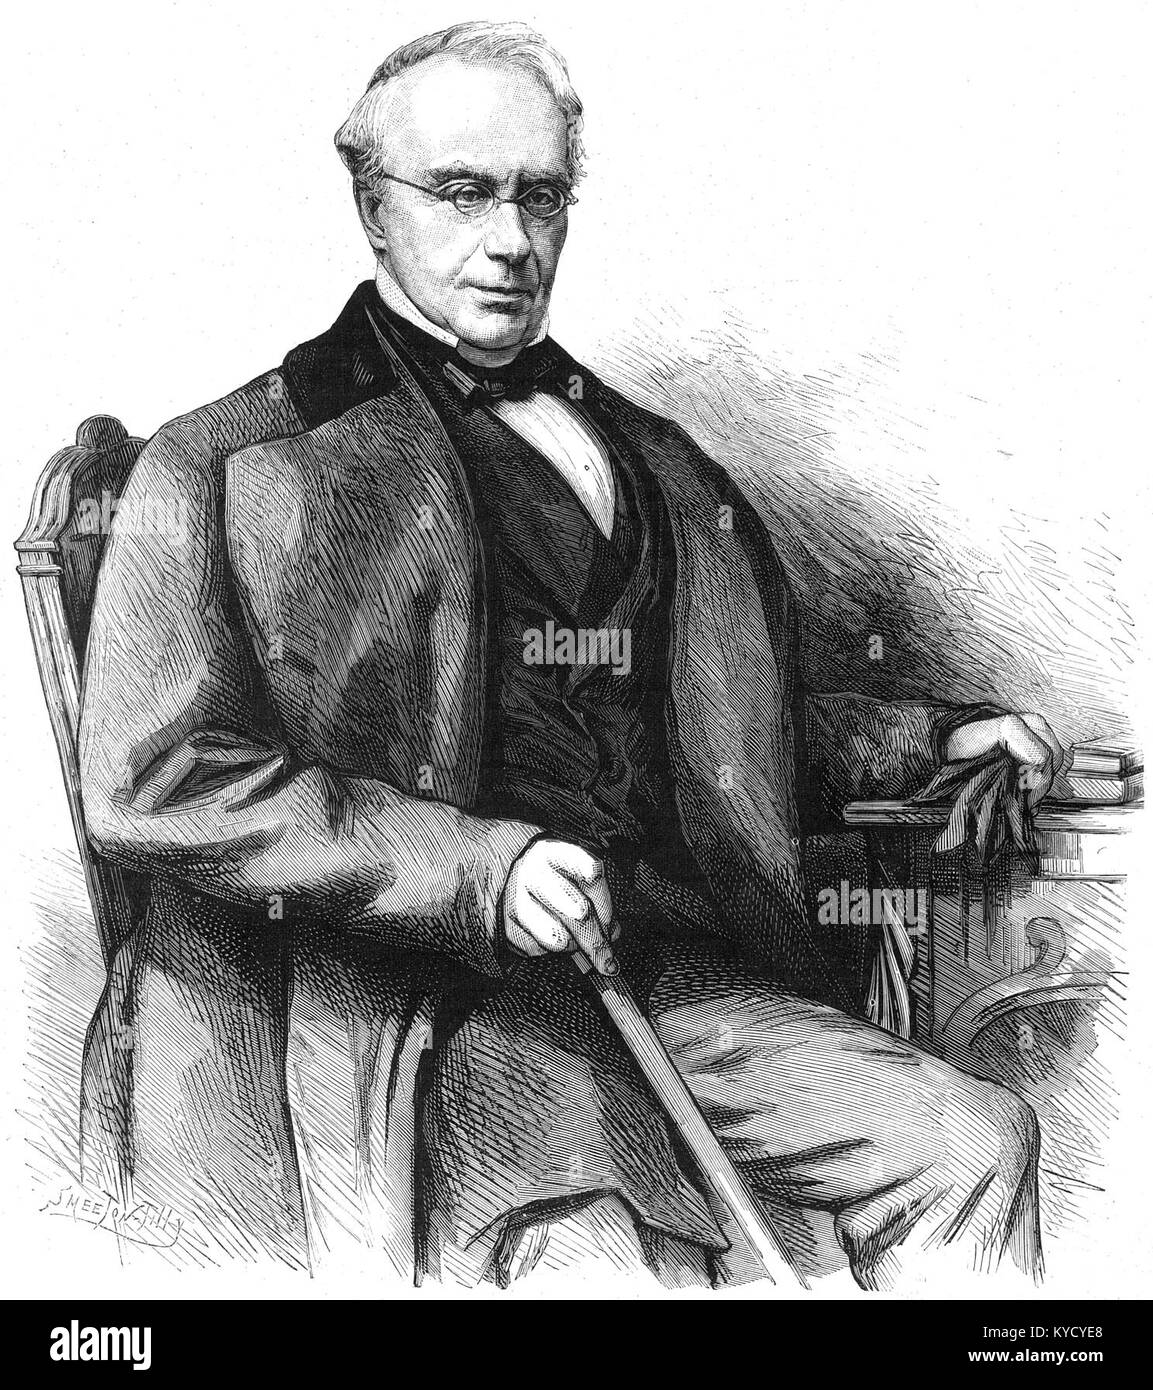 Paolo Devaux, ancien membre du Congrès national belge en 1830 Foto Stock